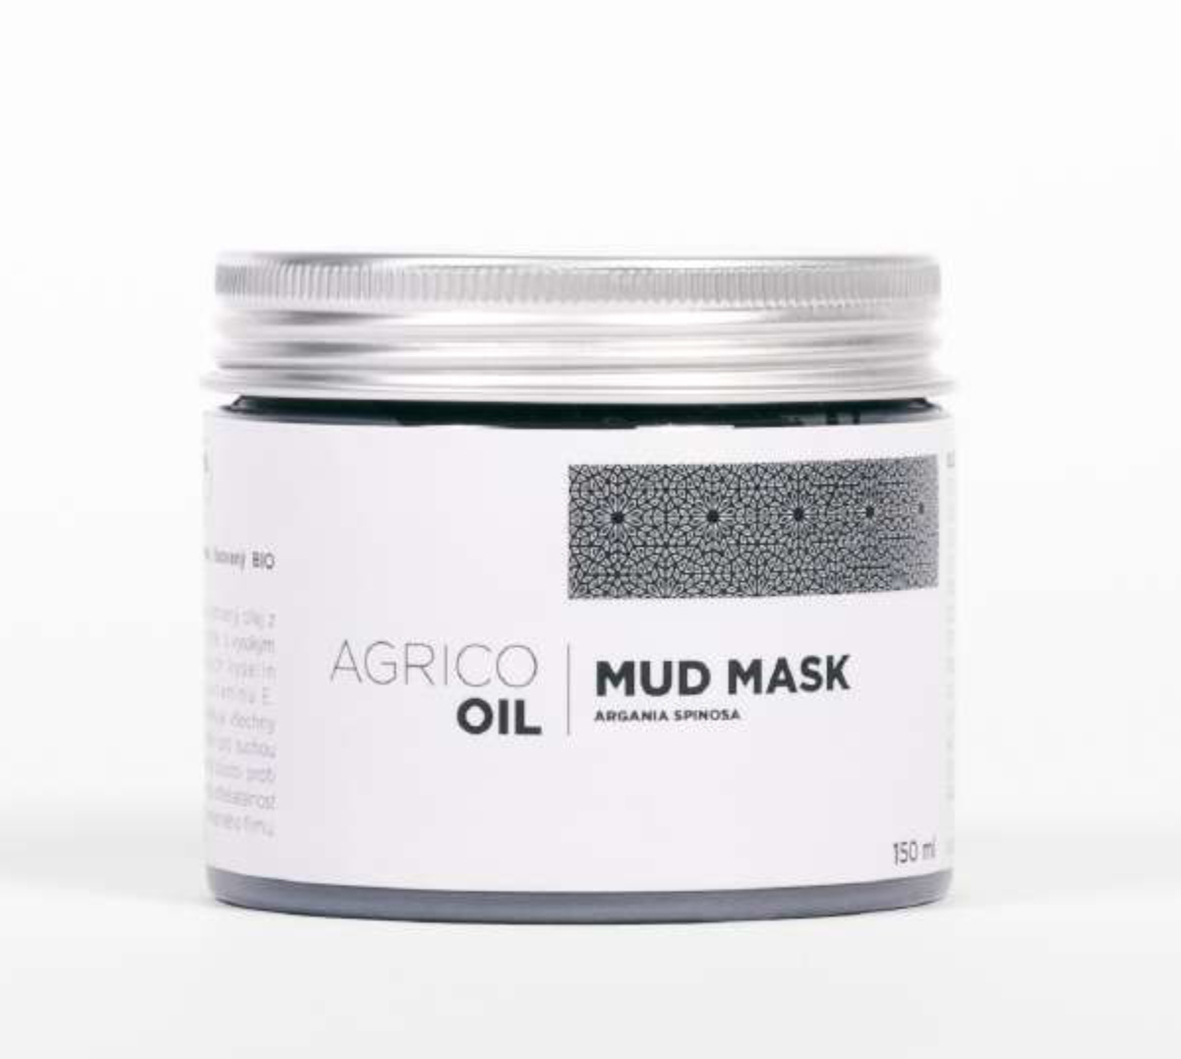 Agrico Oil Mud Mask - pleťová maska s bahnem z mrtvého moře a arganovým olejem, 150 ml